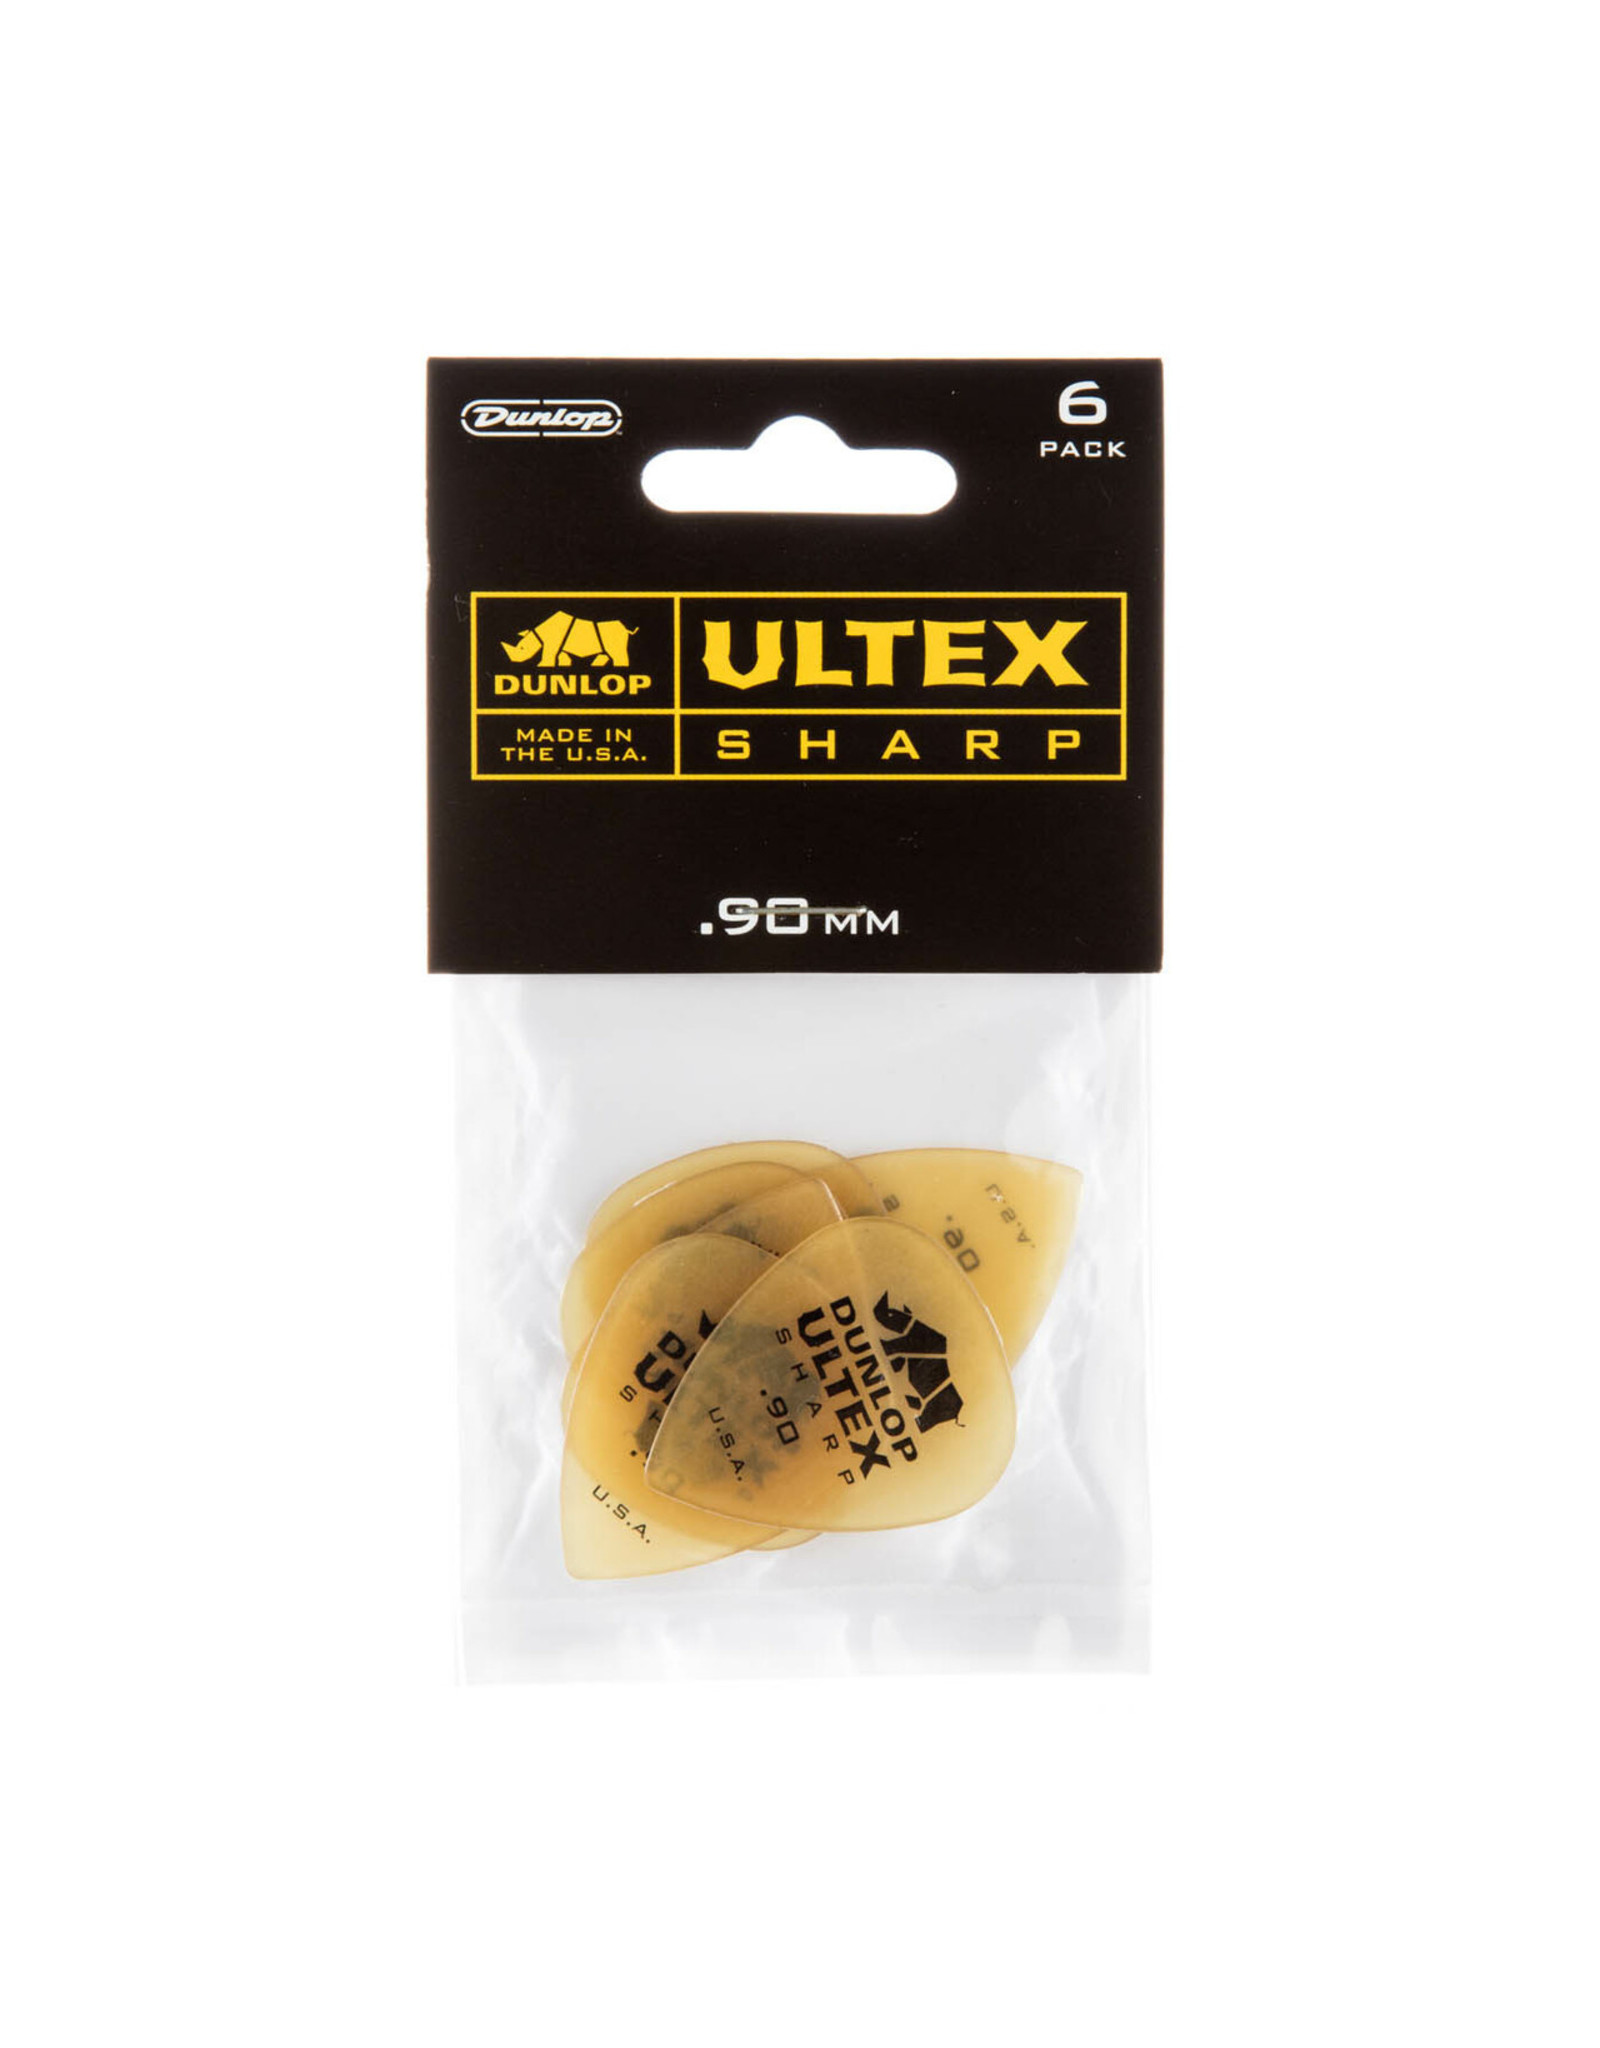 Dunlop Ultex Sharp Player Pack, .90